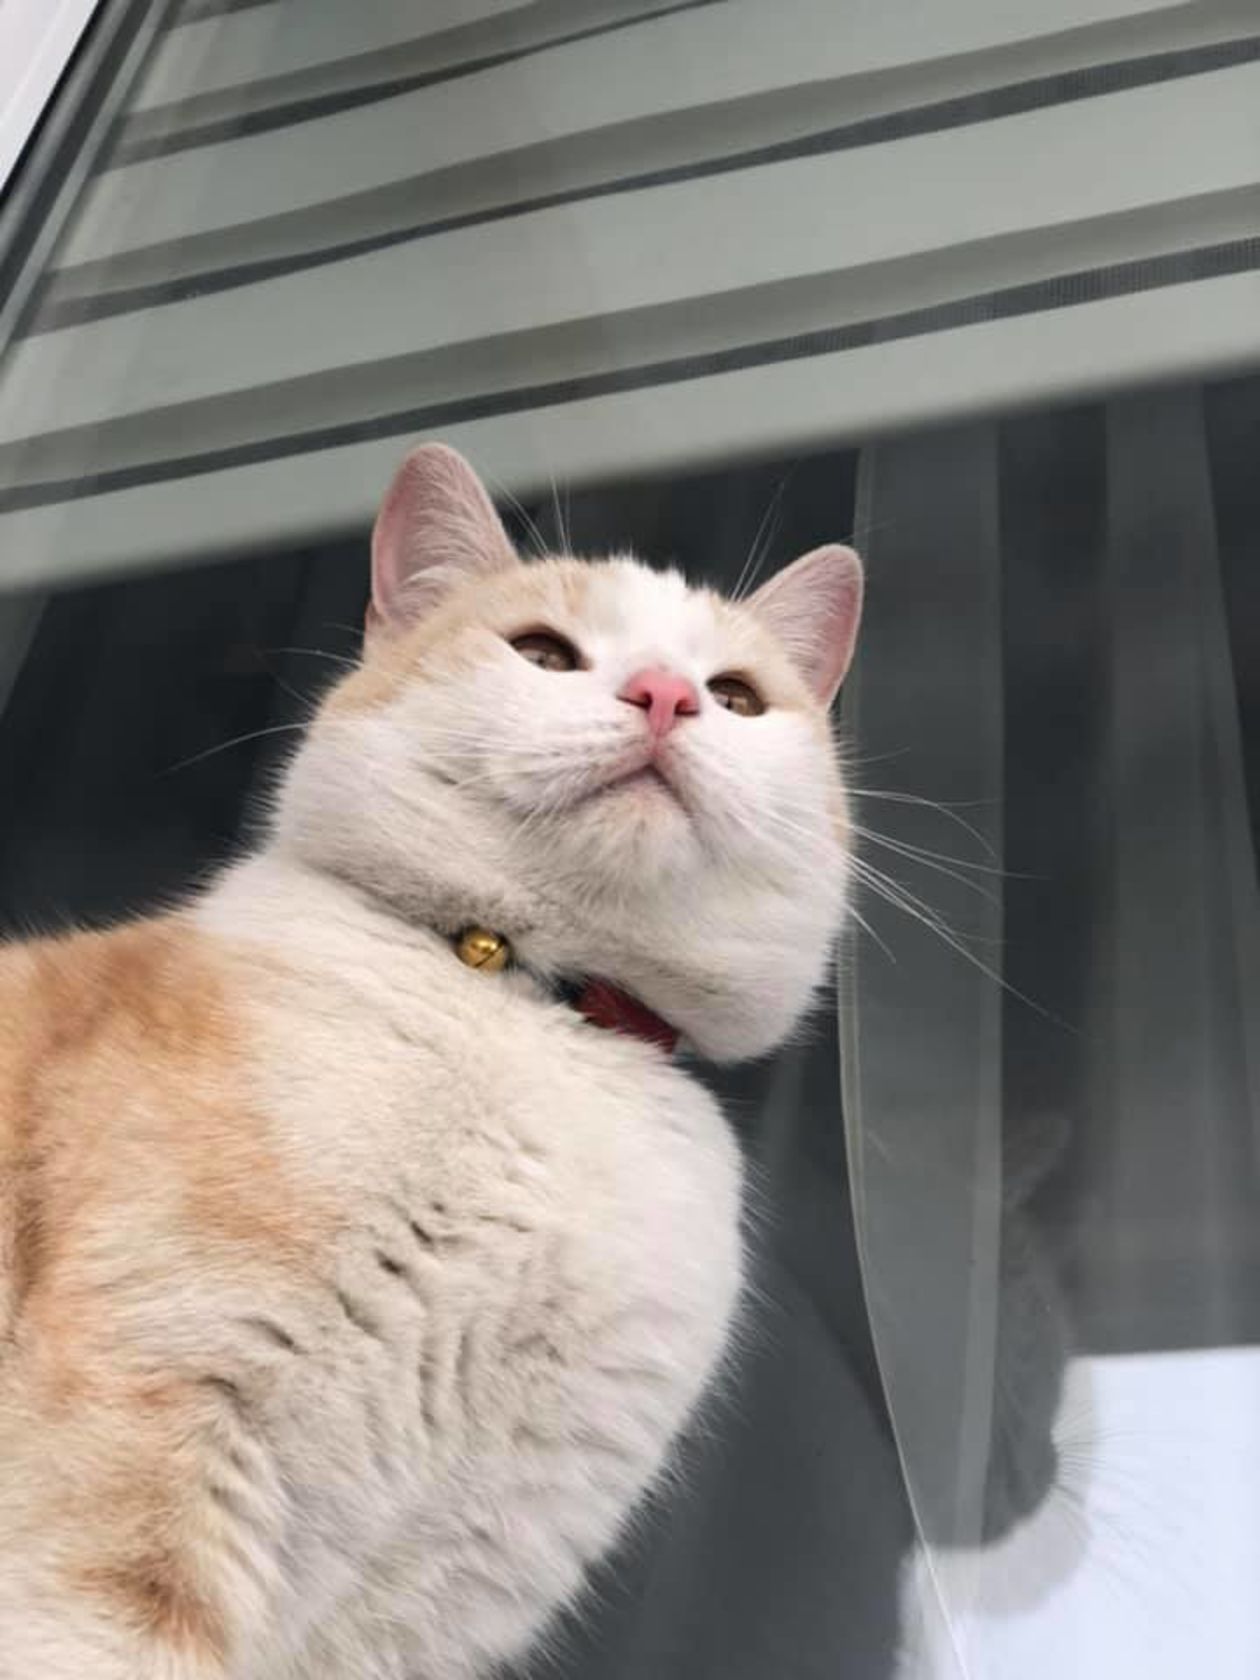 Światowy Dzień Kota 2019. Zdjęcia kotów czytelników